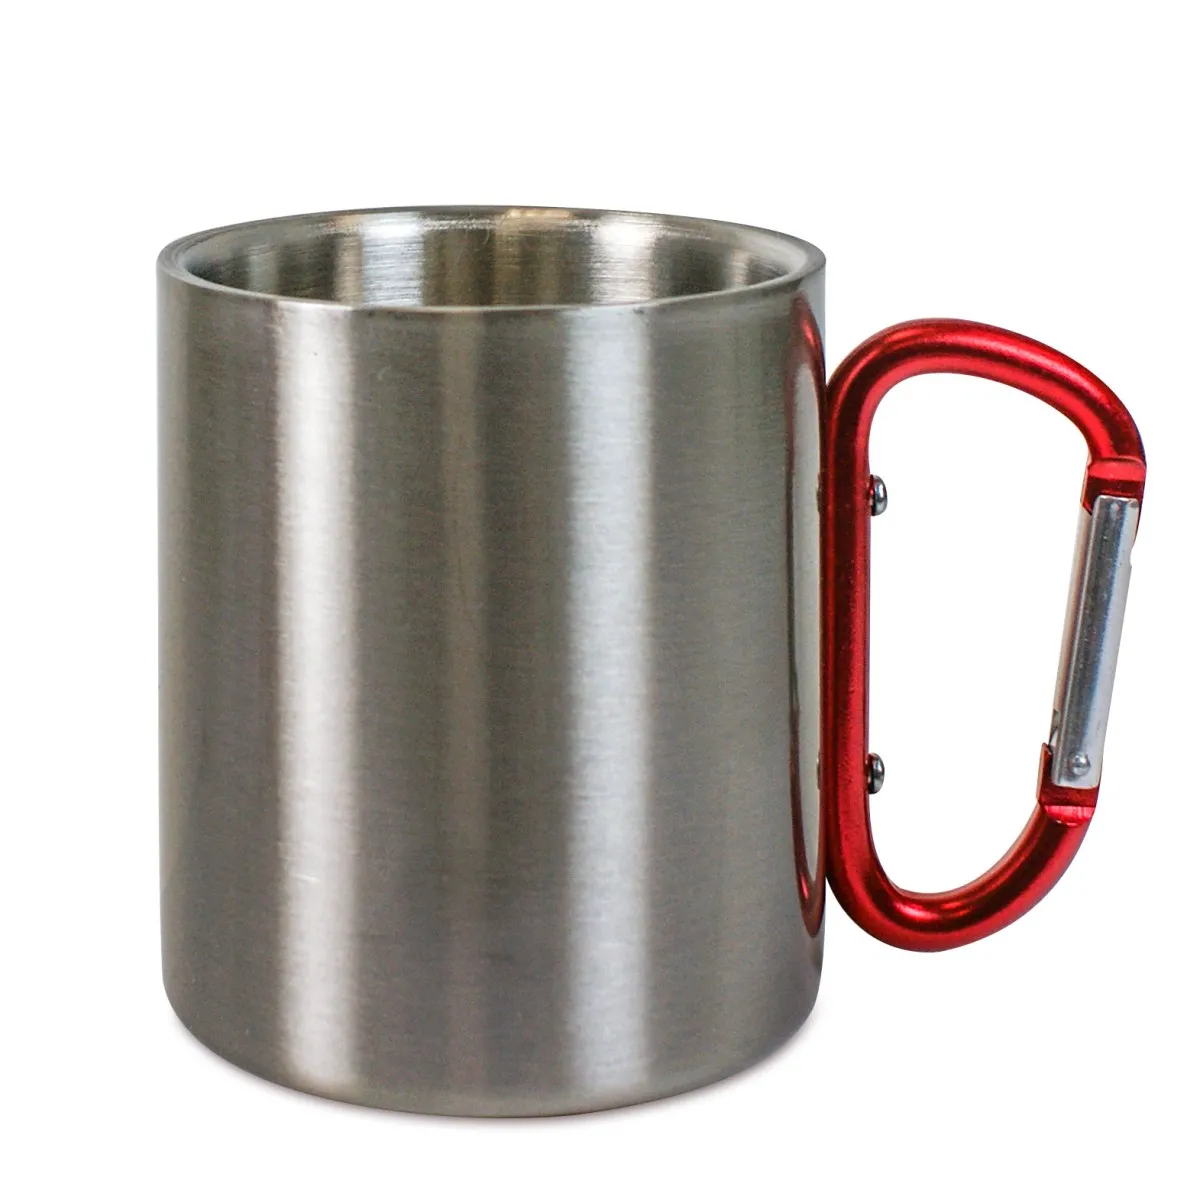 Mug - Coffee mug - Cup - Stainless steel mug with carabiner